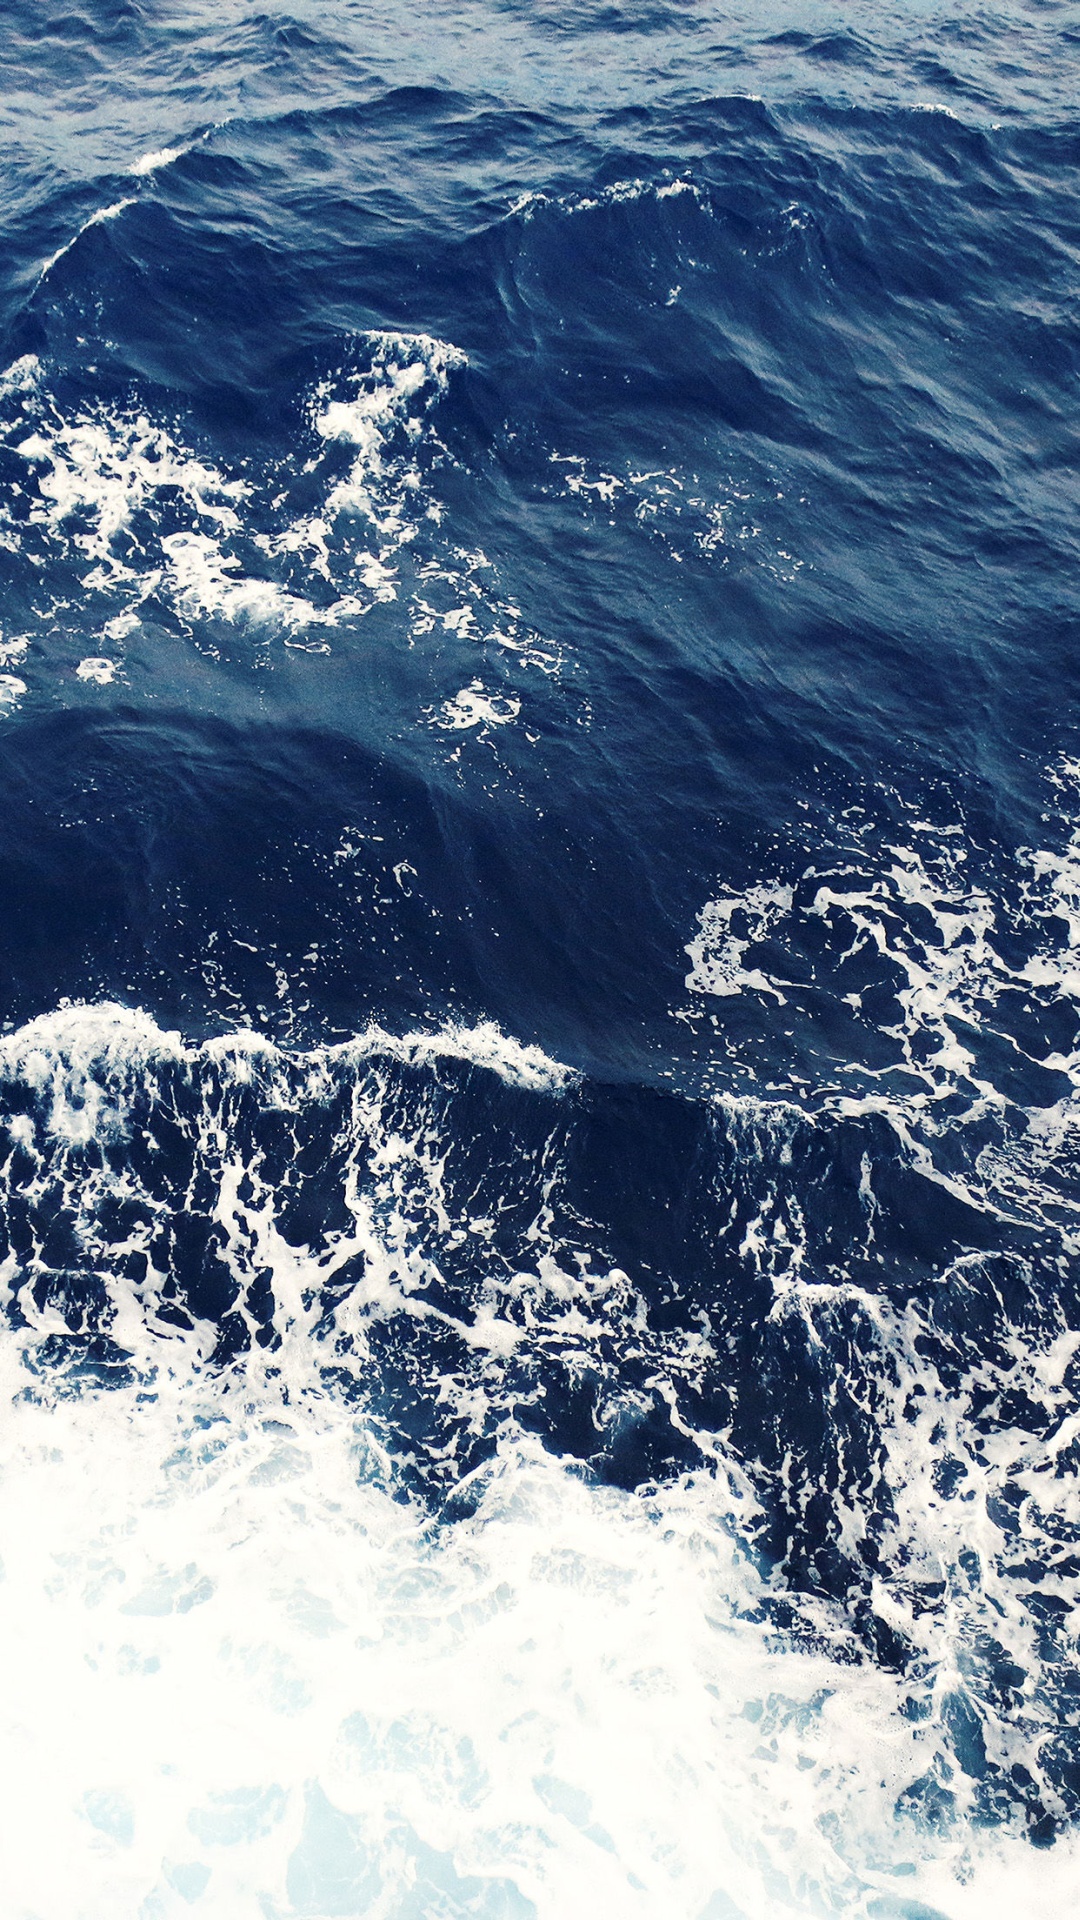 Foamy-Blue-Ocean-Waves-iPhone-6-Plus-HD-Wallpaper